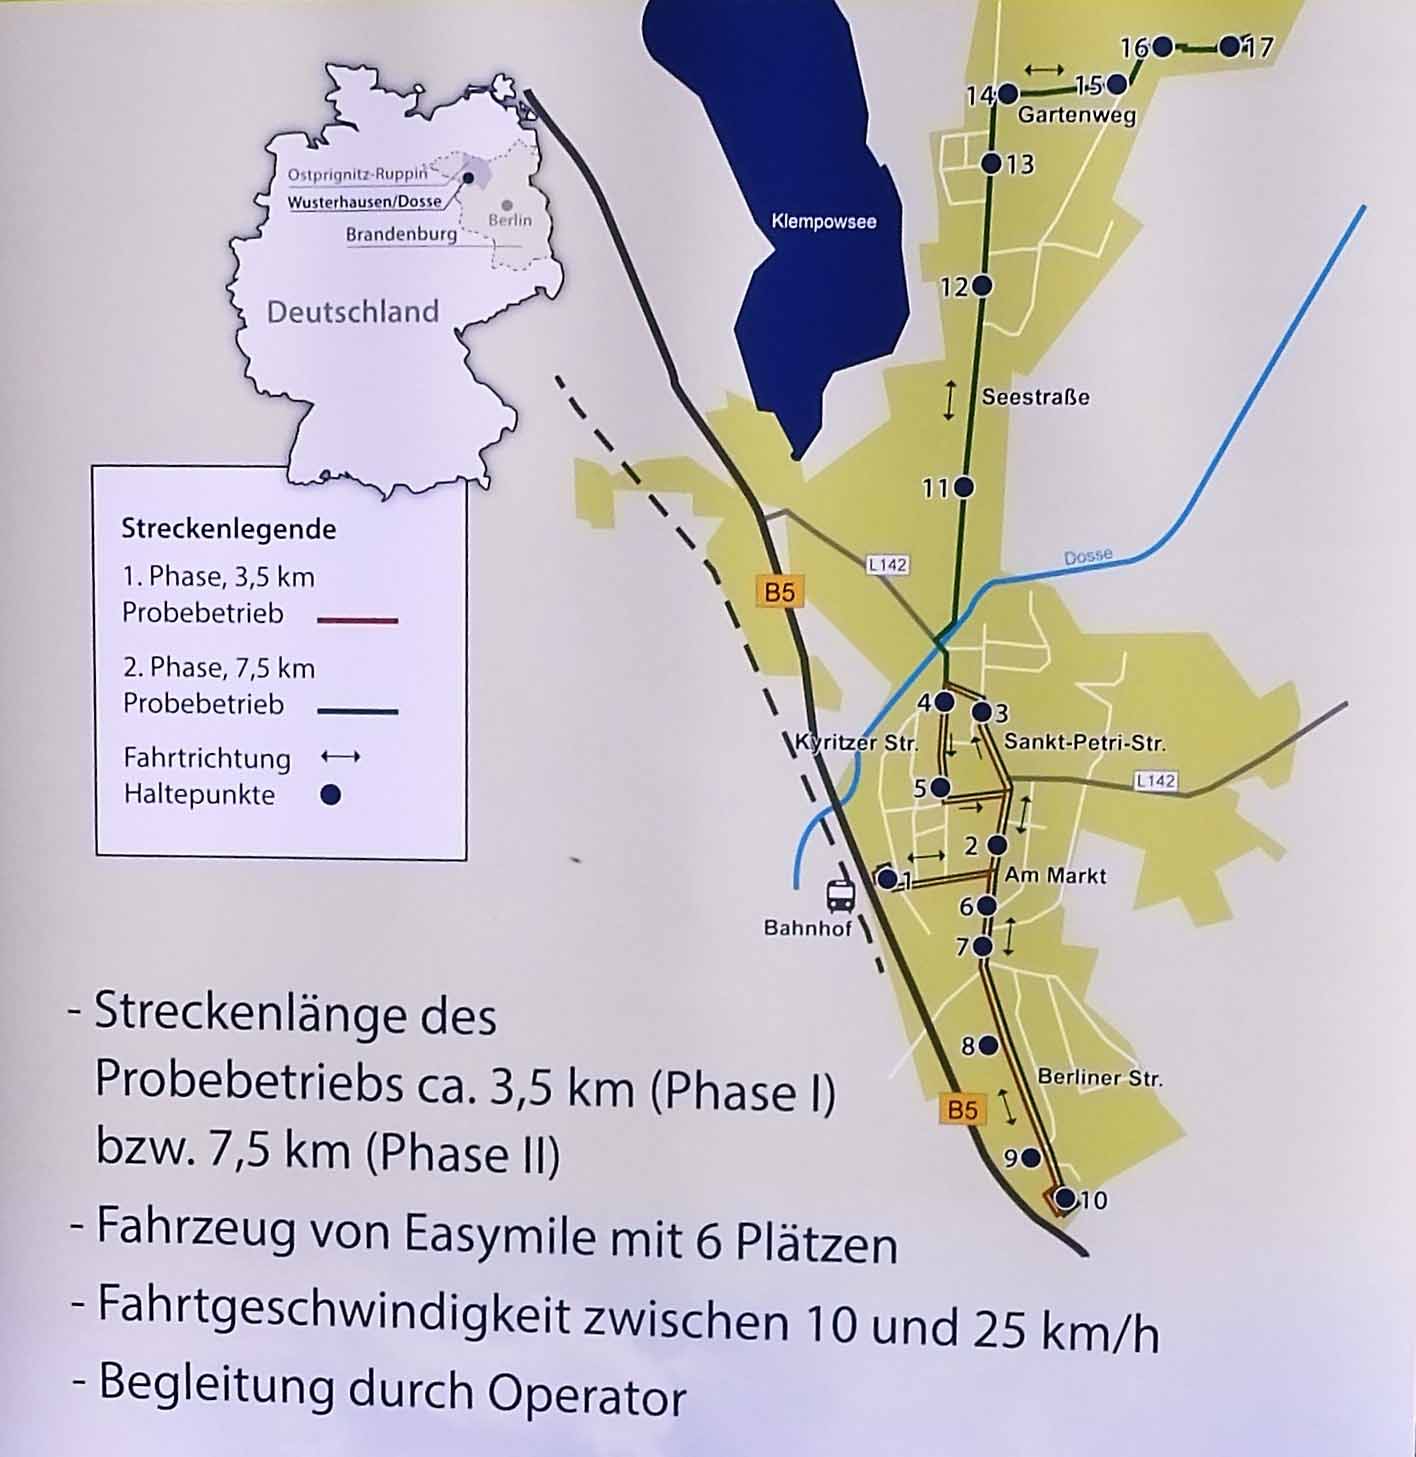 Die Streckenführung des automatisierten Minibusses durch Wusterhausen/Dosse.